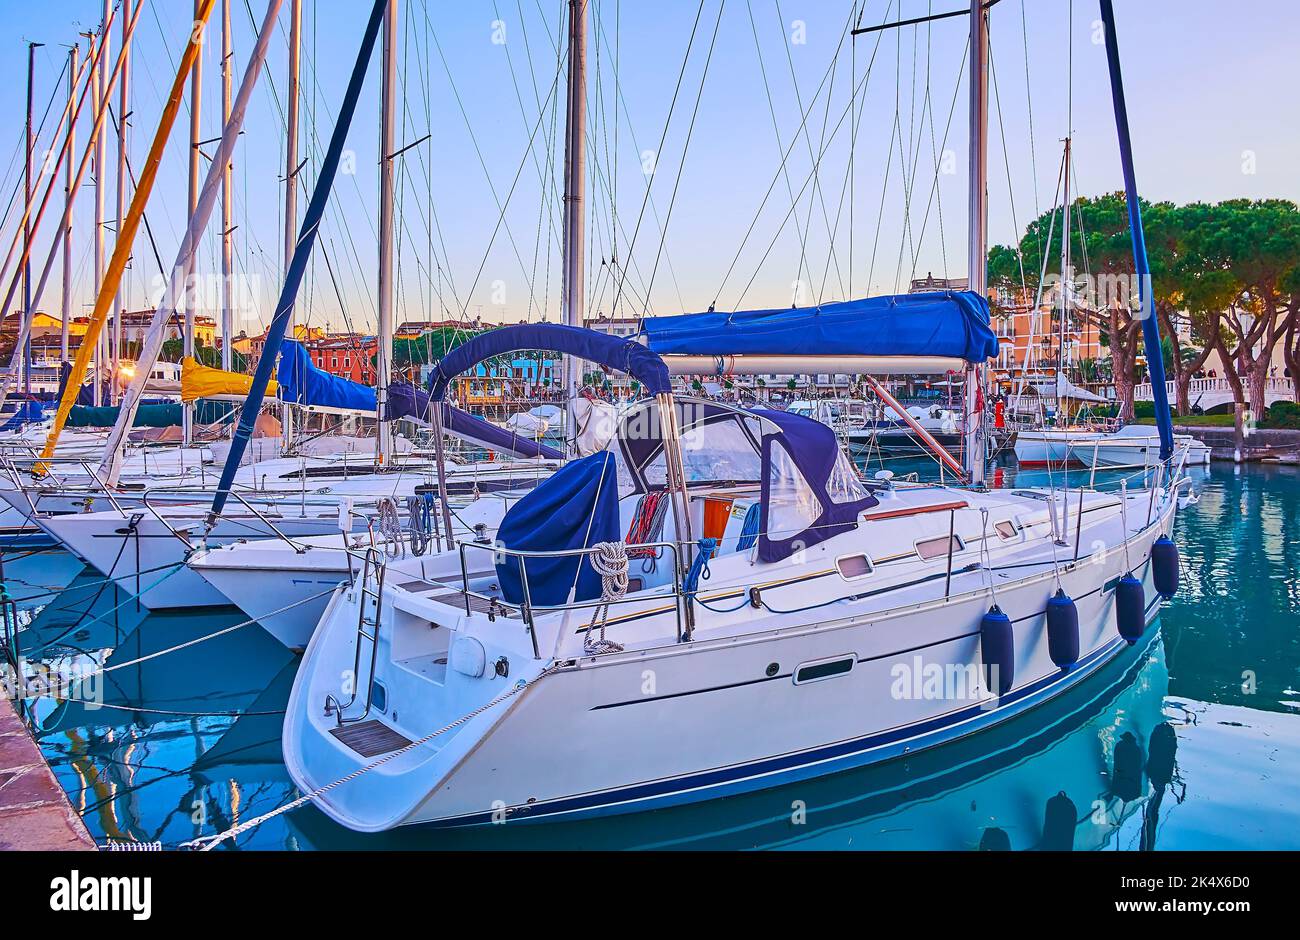 The sail yachts, moored at the shipyard of the Port of Desenzano del Garda, Lake Garda, Italy Stock Photo